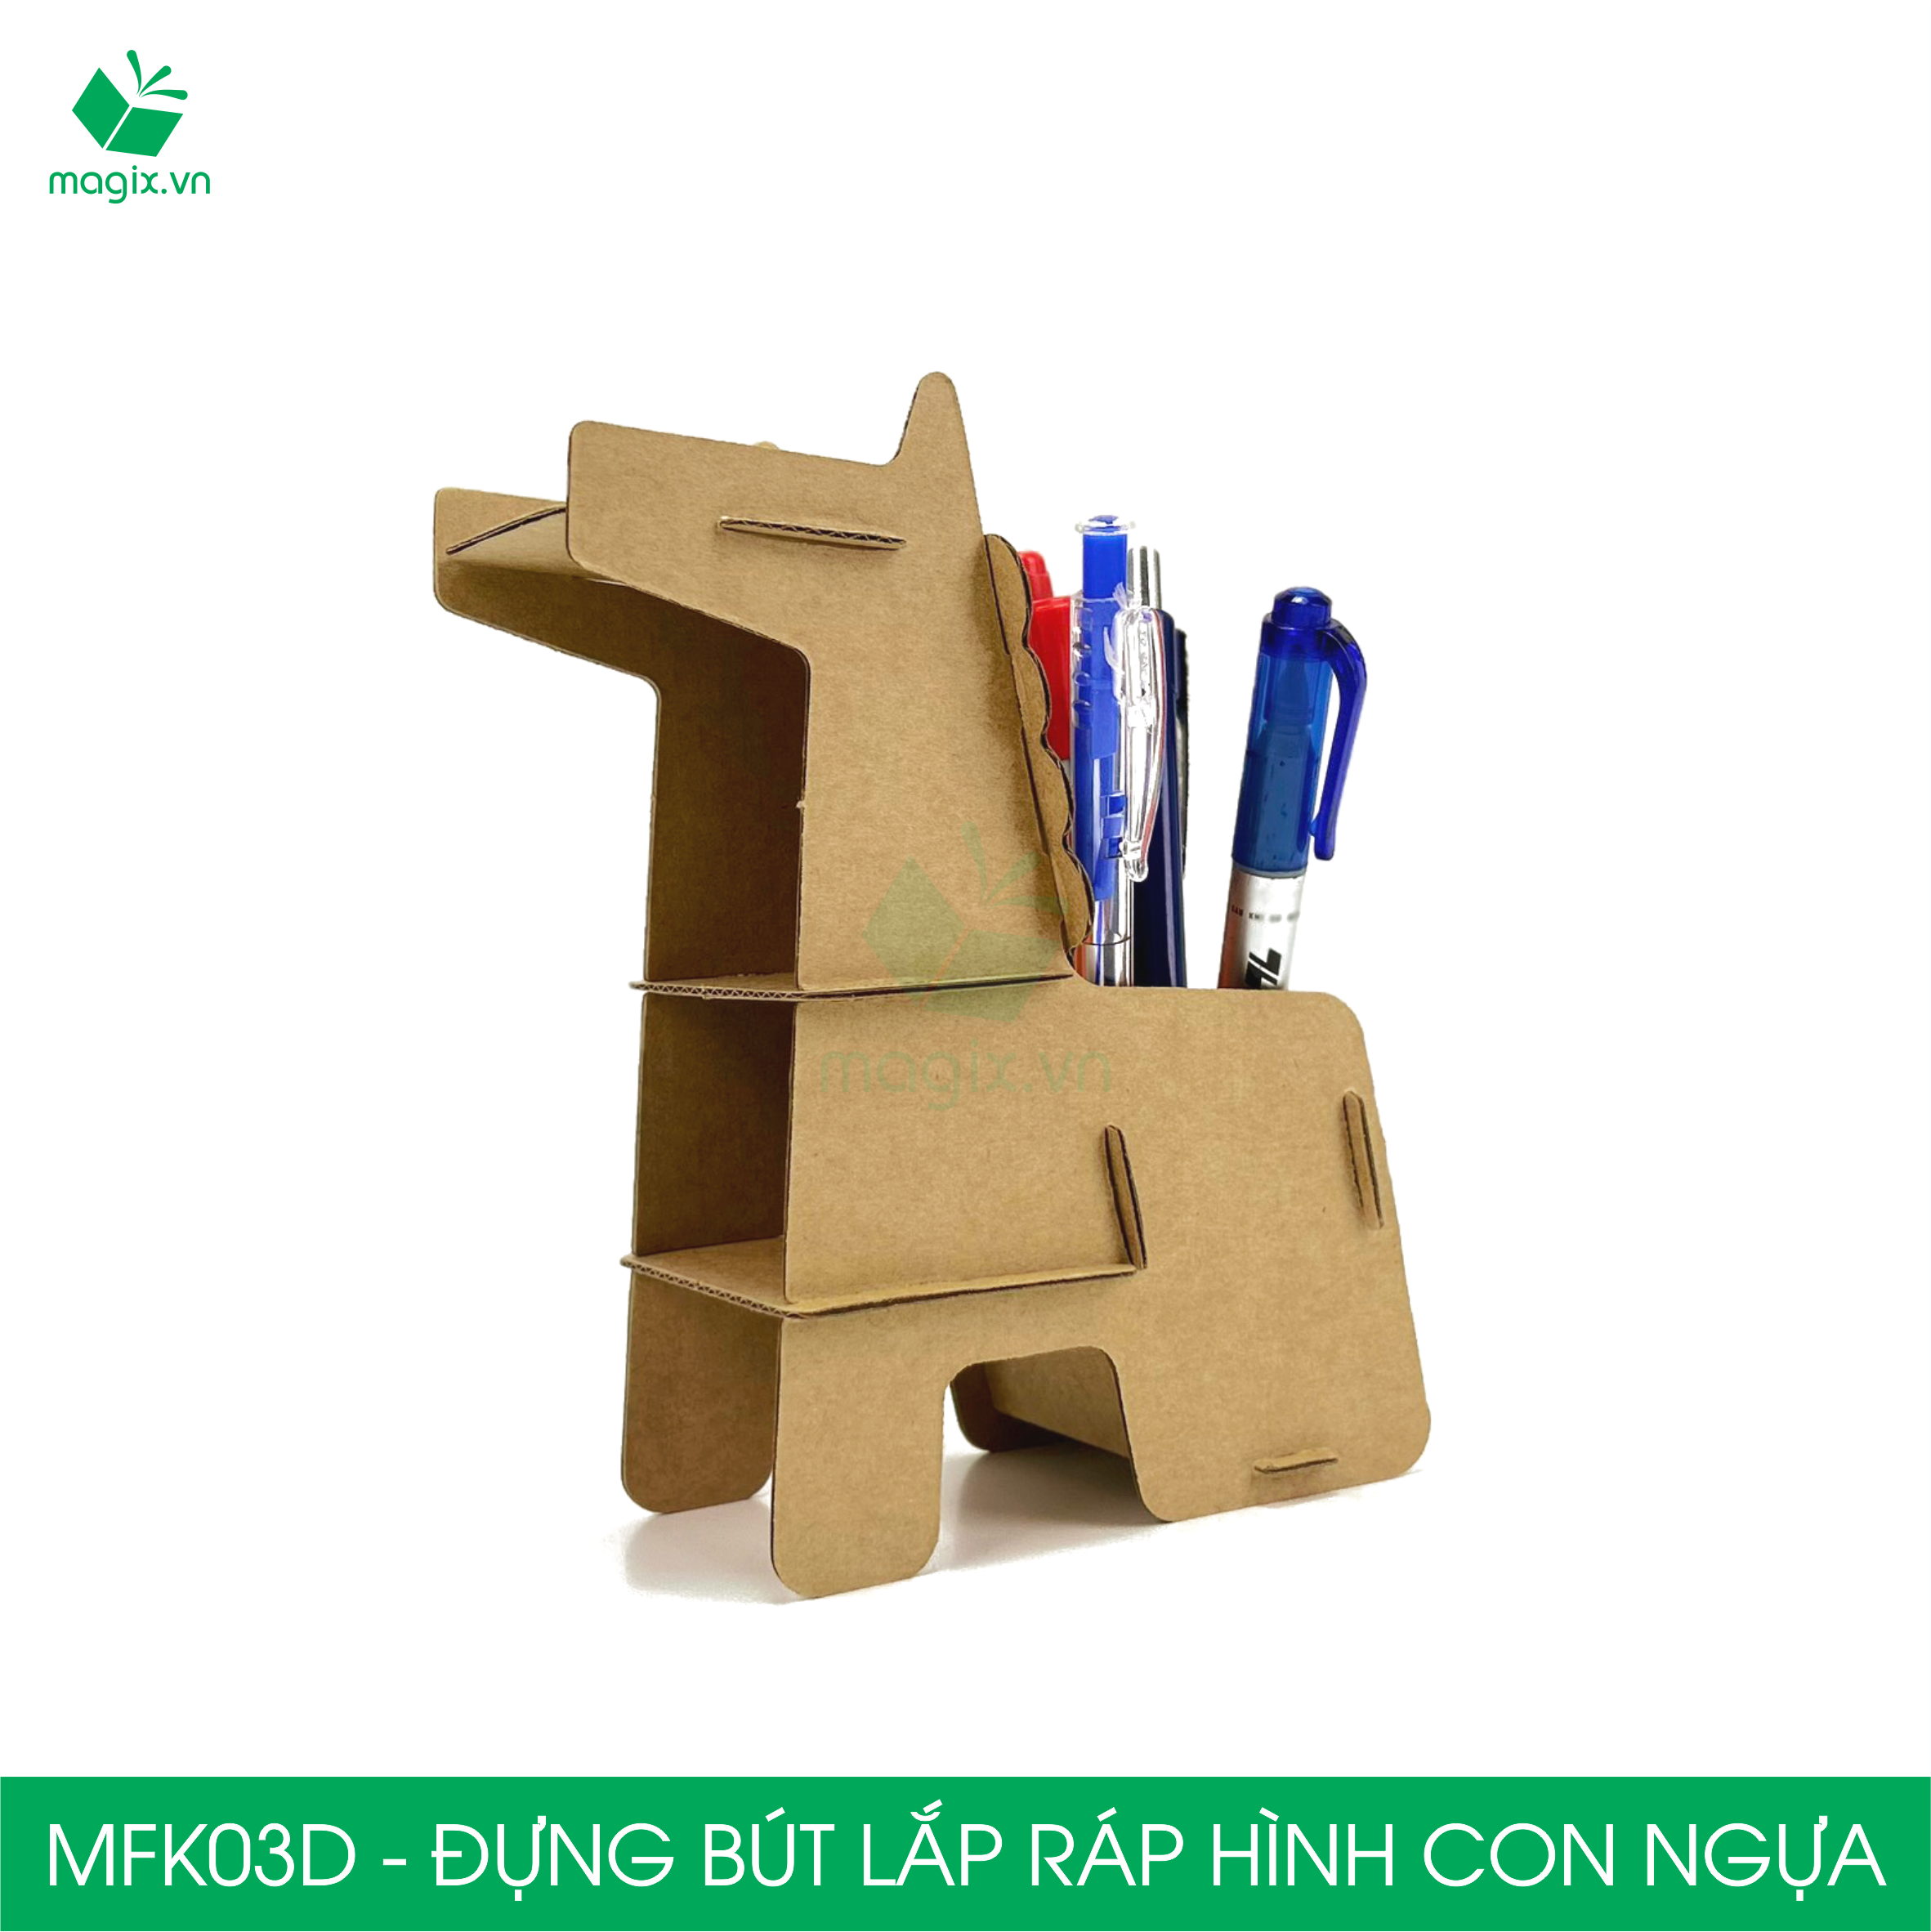 MFK03D - Đựng bút lắp ráp hình con ngựa, đồ đựng bút hình thú bằng giấy carton siêu cứng